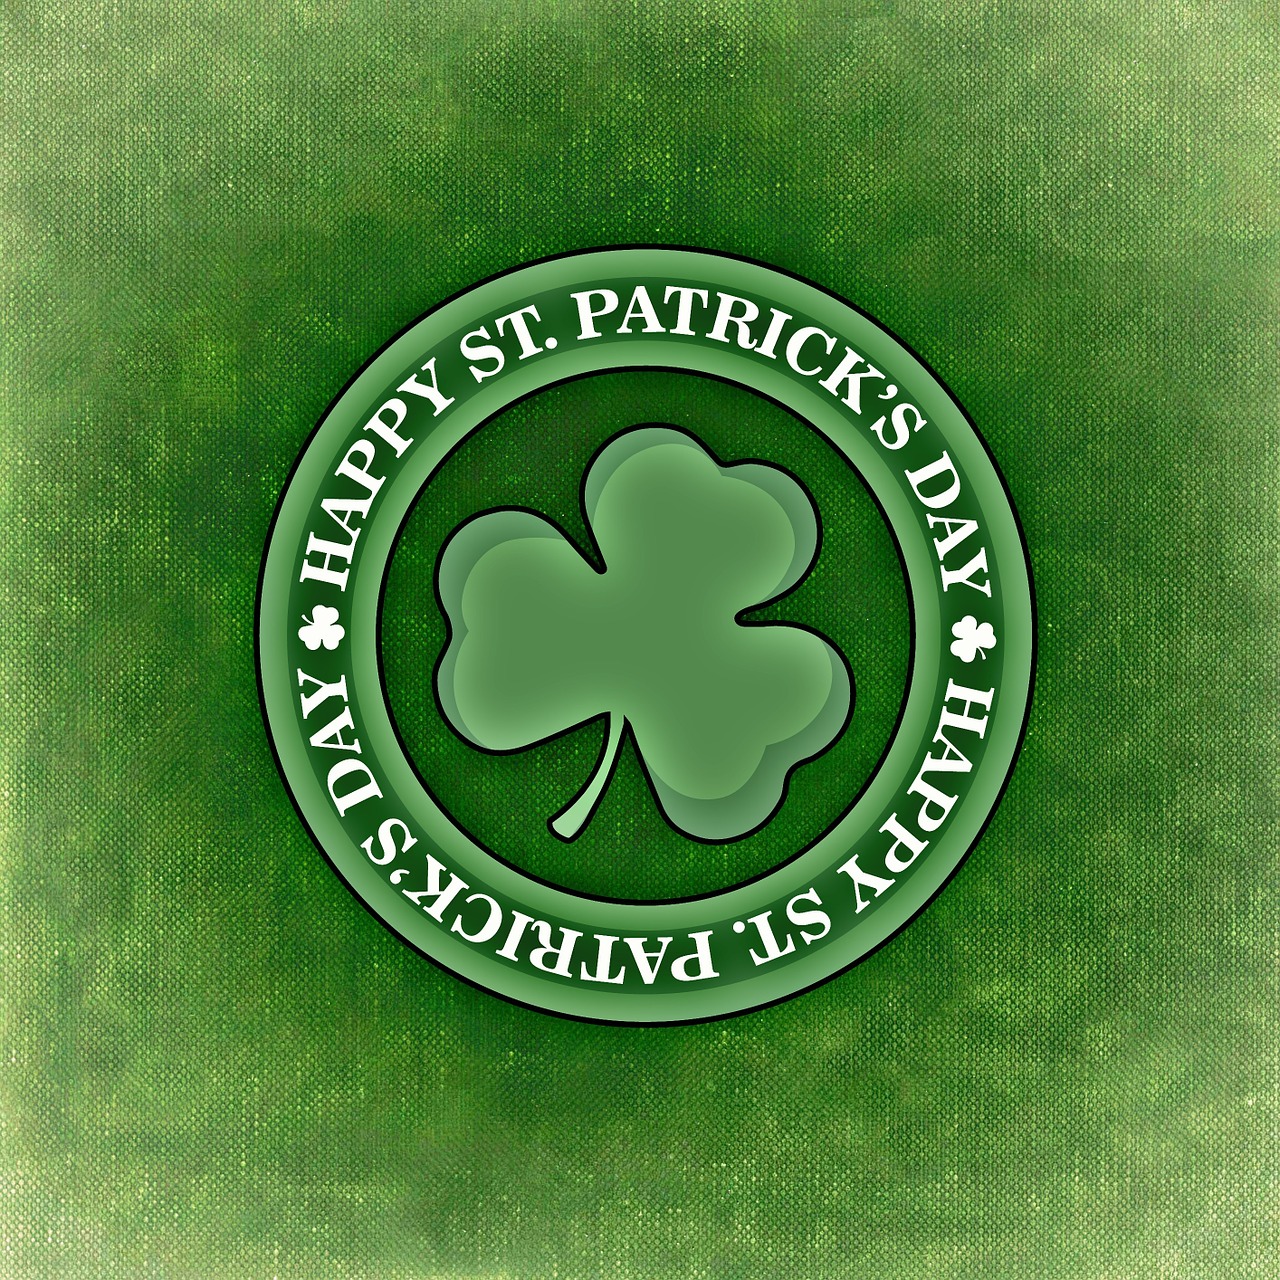 irish, st patrick's day, ireland-844930.jpg